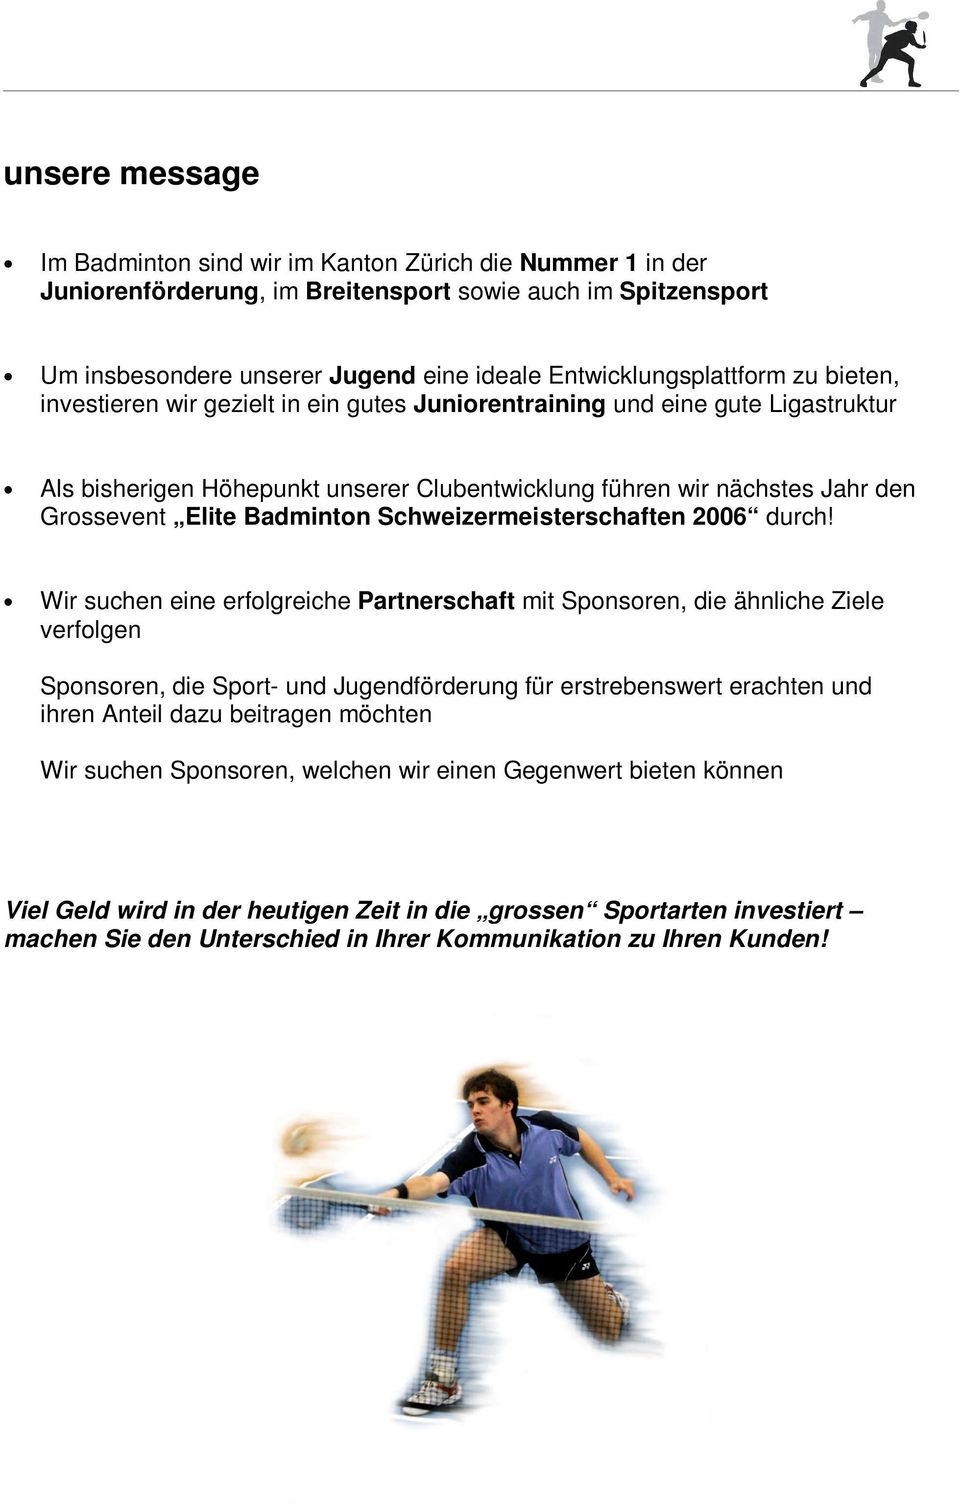 Grossevent Elite Badminton Schweizermeisterschaften 2006 durch!